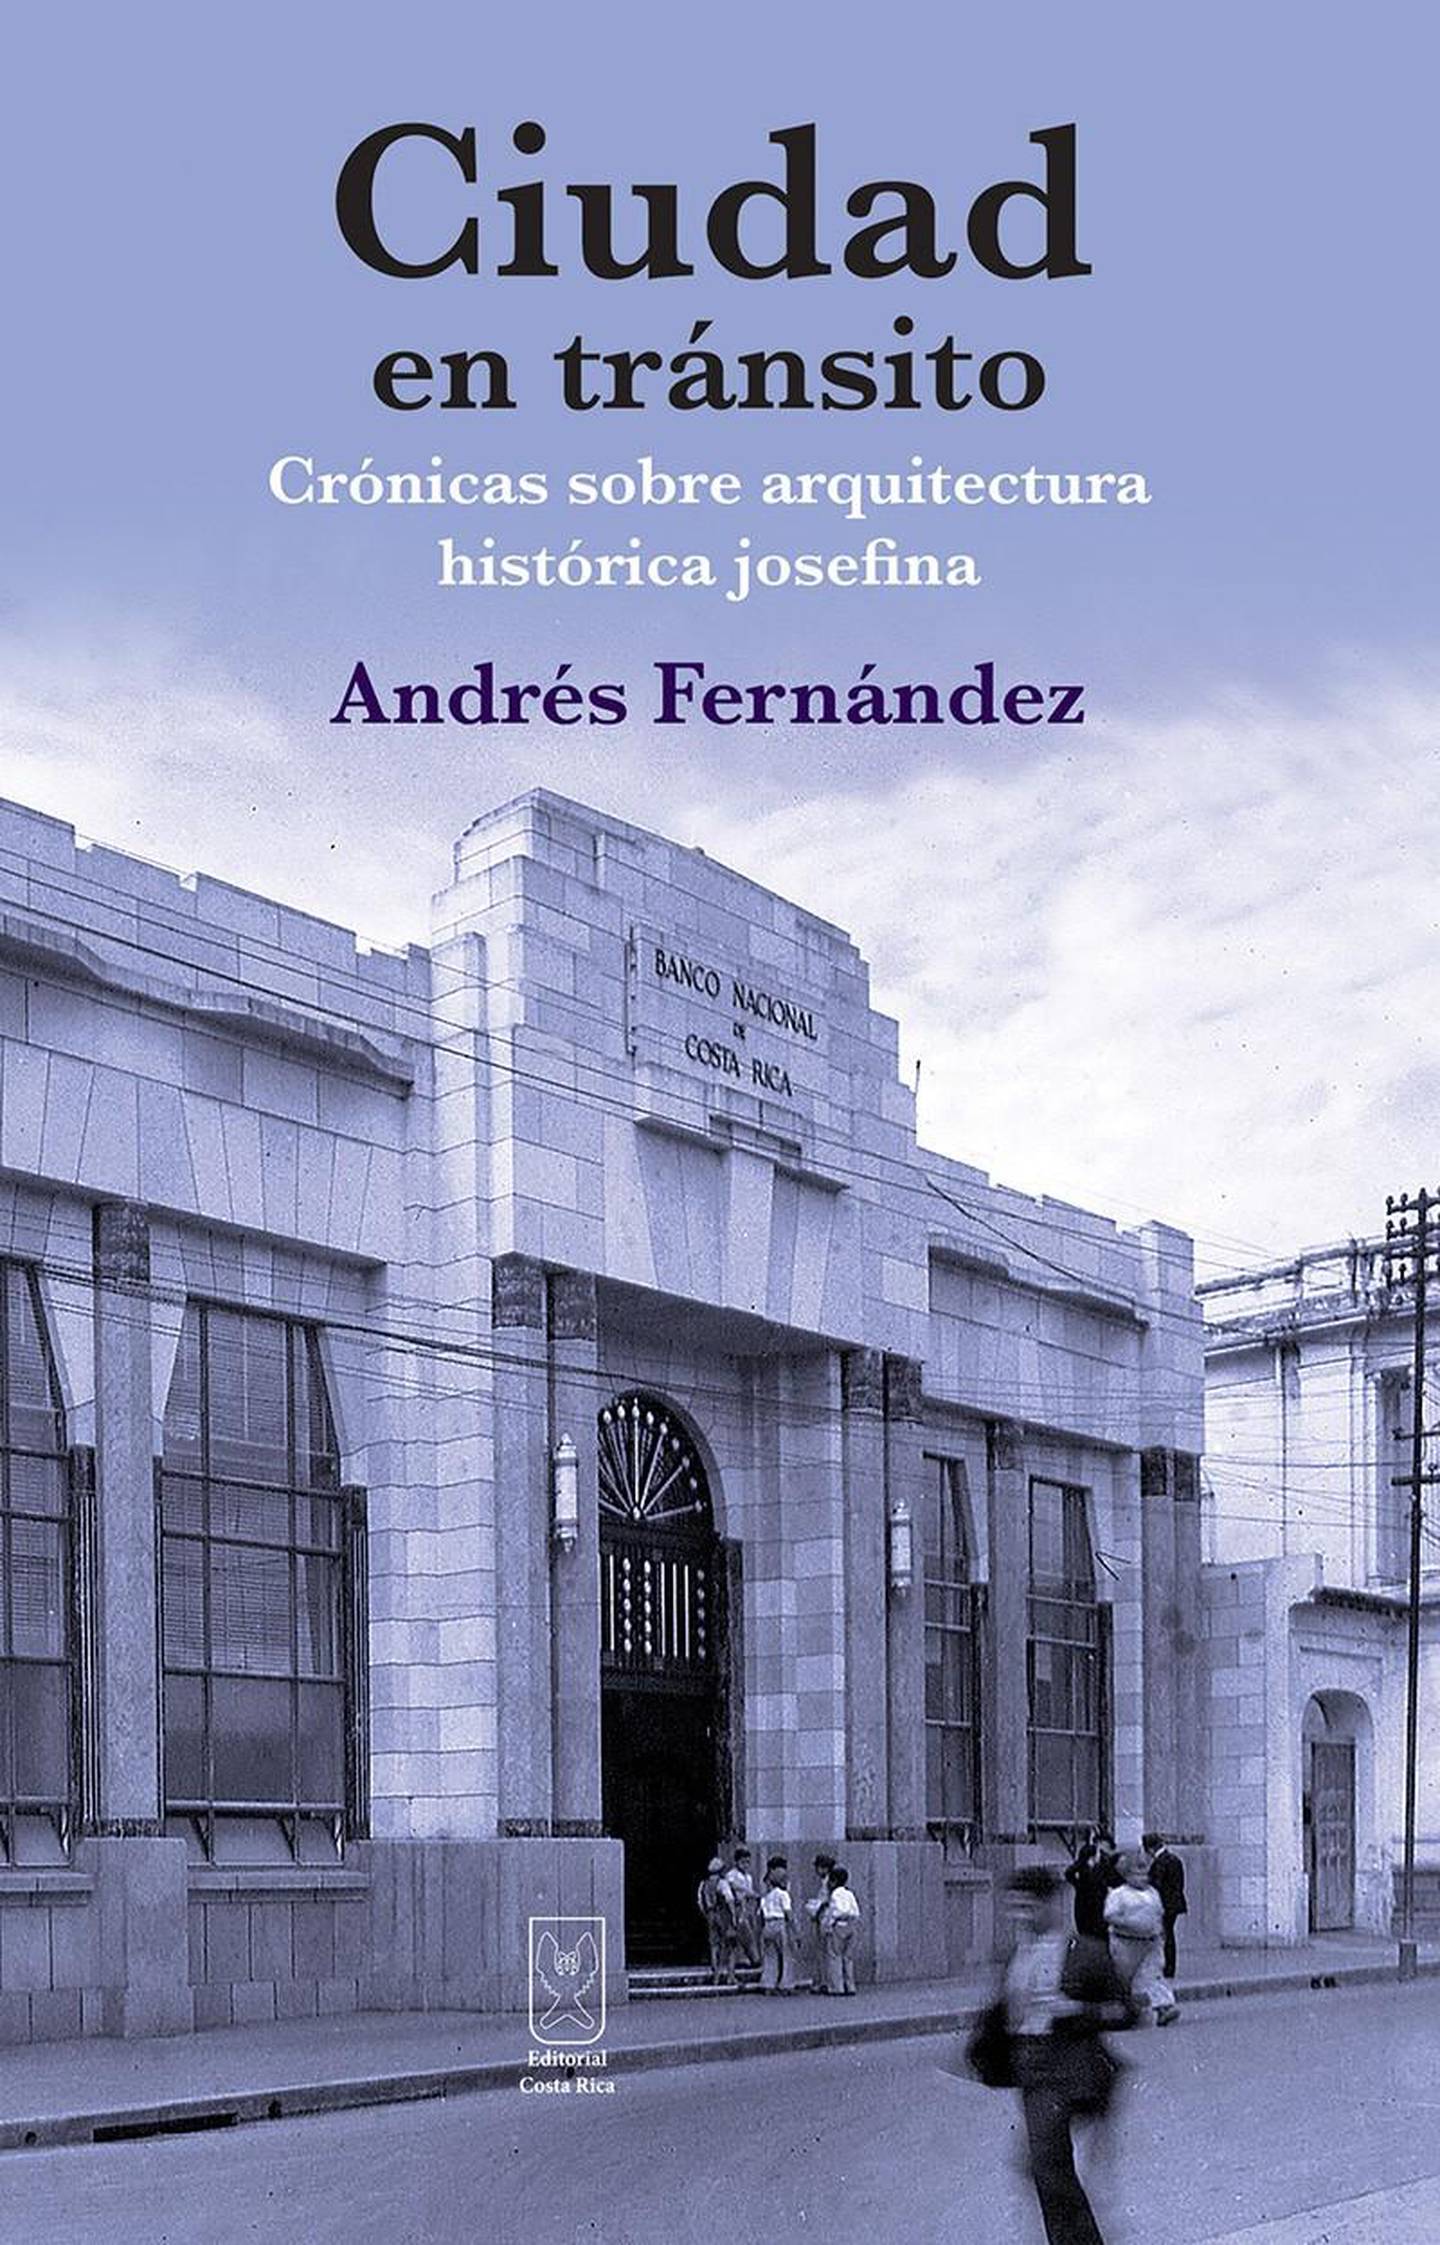 Ciudad en tránsito, cuarto libro de crónicas de Andrés Fernández.